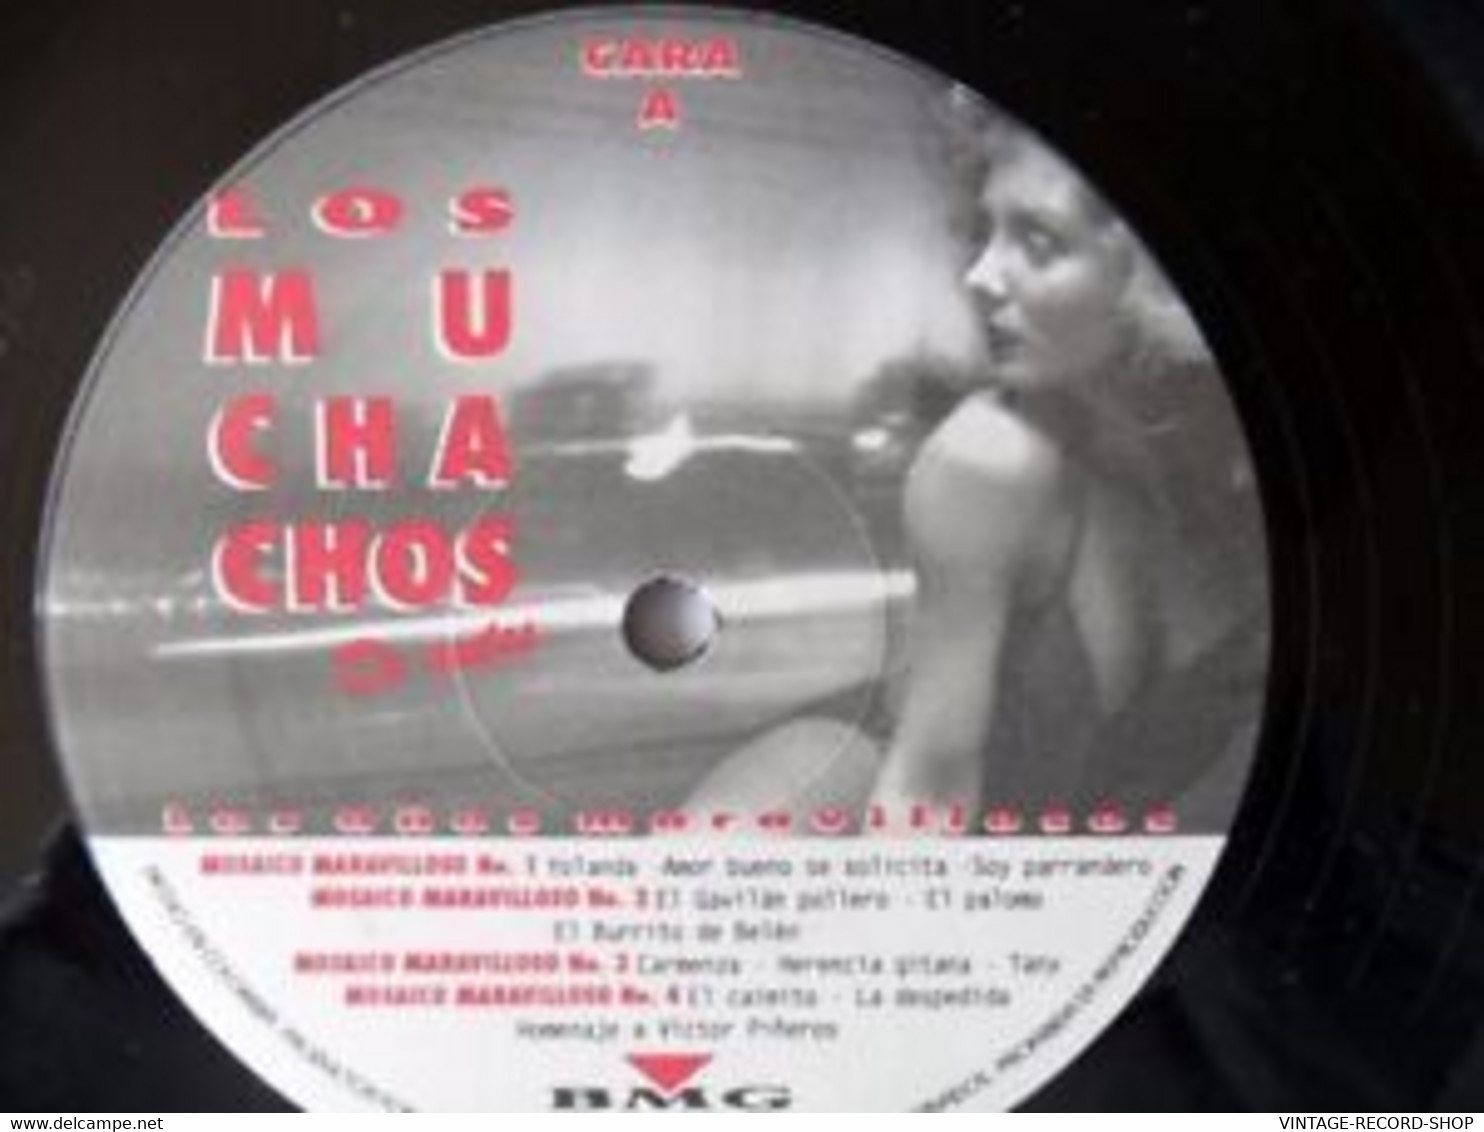 LOS MUCHACHOS DE ANTES-LOS AÑOS MARAVILLOSOS-MOSAICO MARAVILLOSO 1 TO 7 BMG LP - World Music